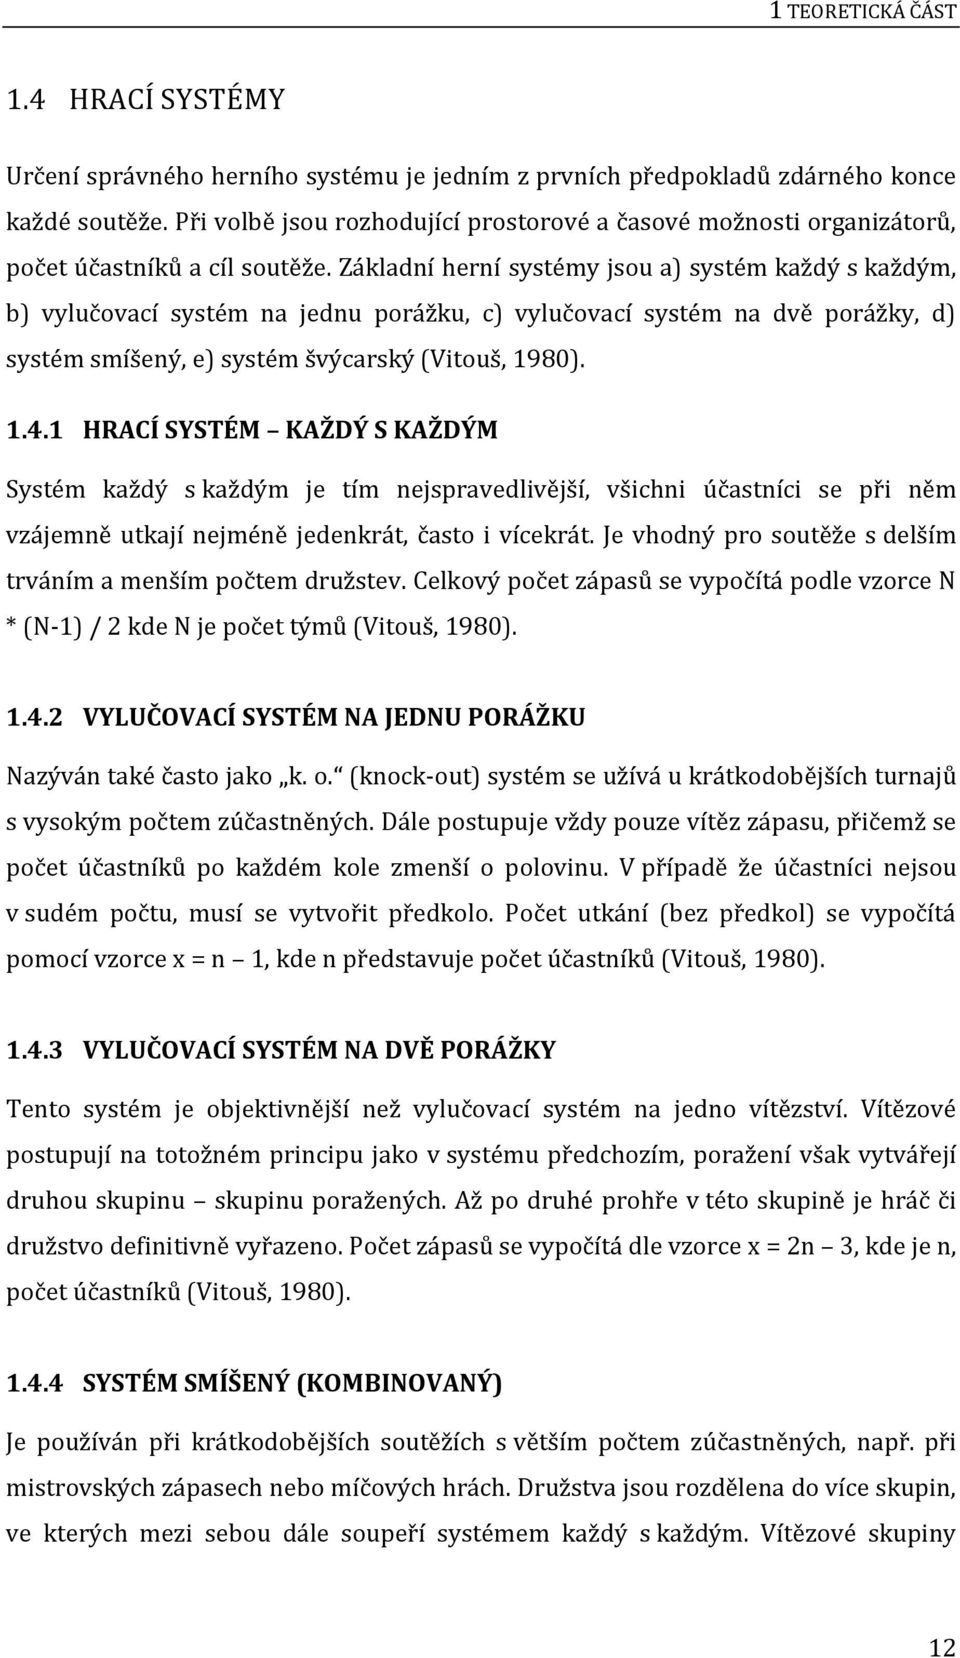 Základní herní systémy jsou a) systém každý s každým, b) vylučovací systém na jednu porážku, c) vylučovací systém na dvě porážky, d) systém smíšený, e) systém švýcarský (Vitouš, 1980). 1.4.